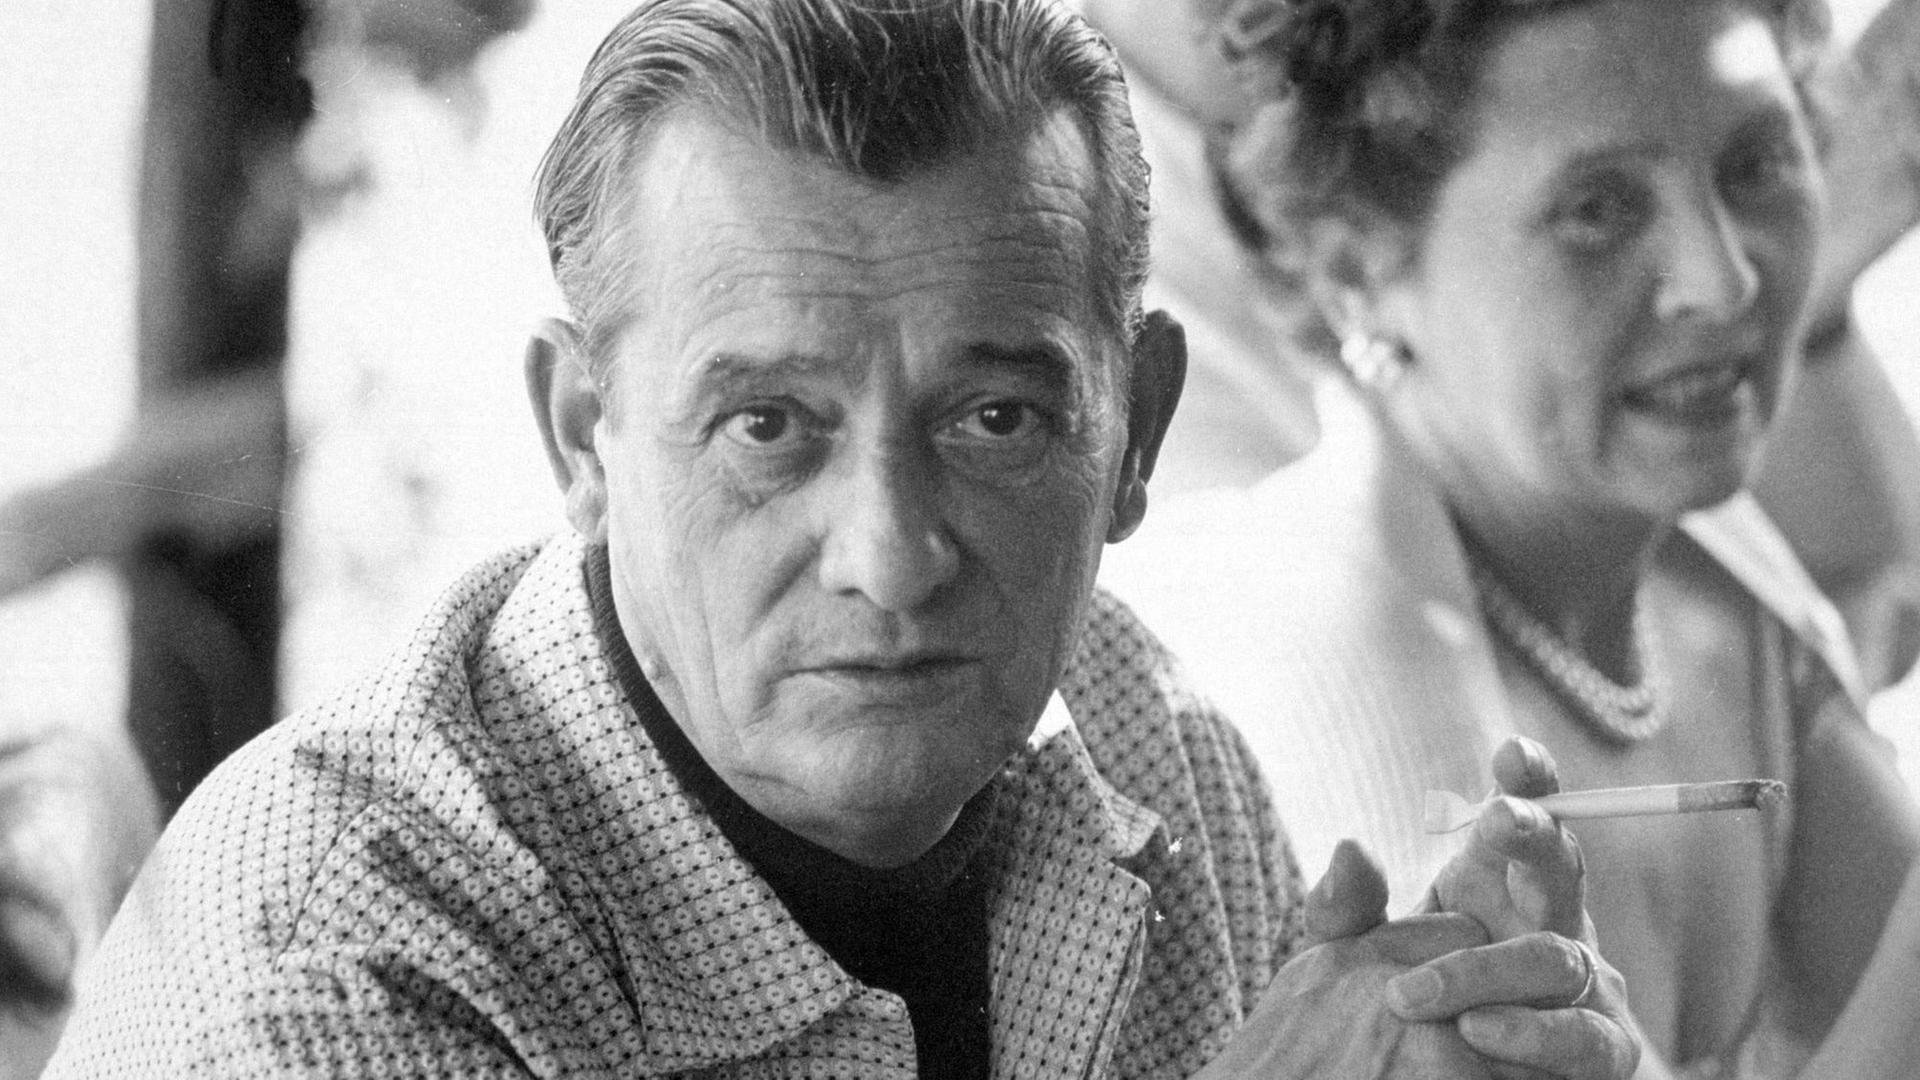 Der Schriftsteller Marcel Pagnol trägt ein gemustertes Hemd und hält eine Zigarette in der Hand. Das Foto wurde 1955 in Cannes aufgenommen.